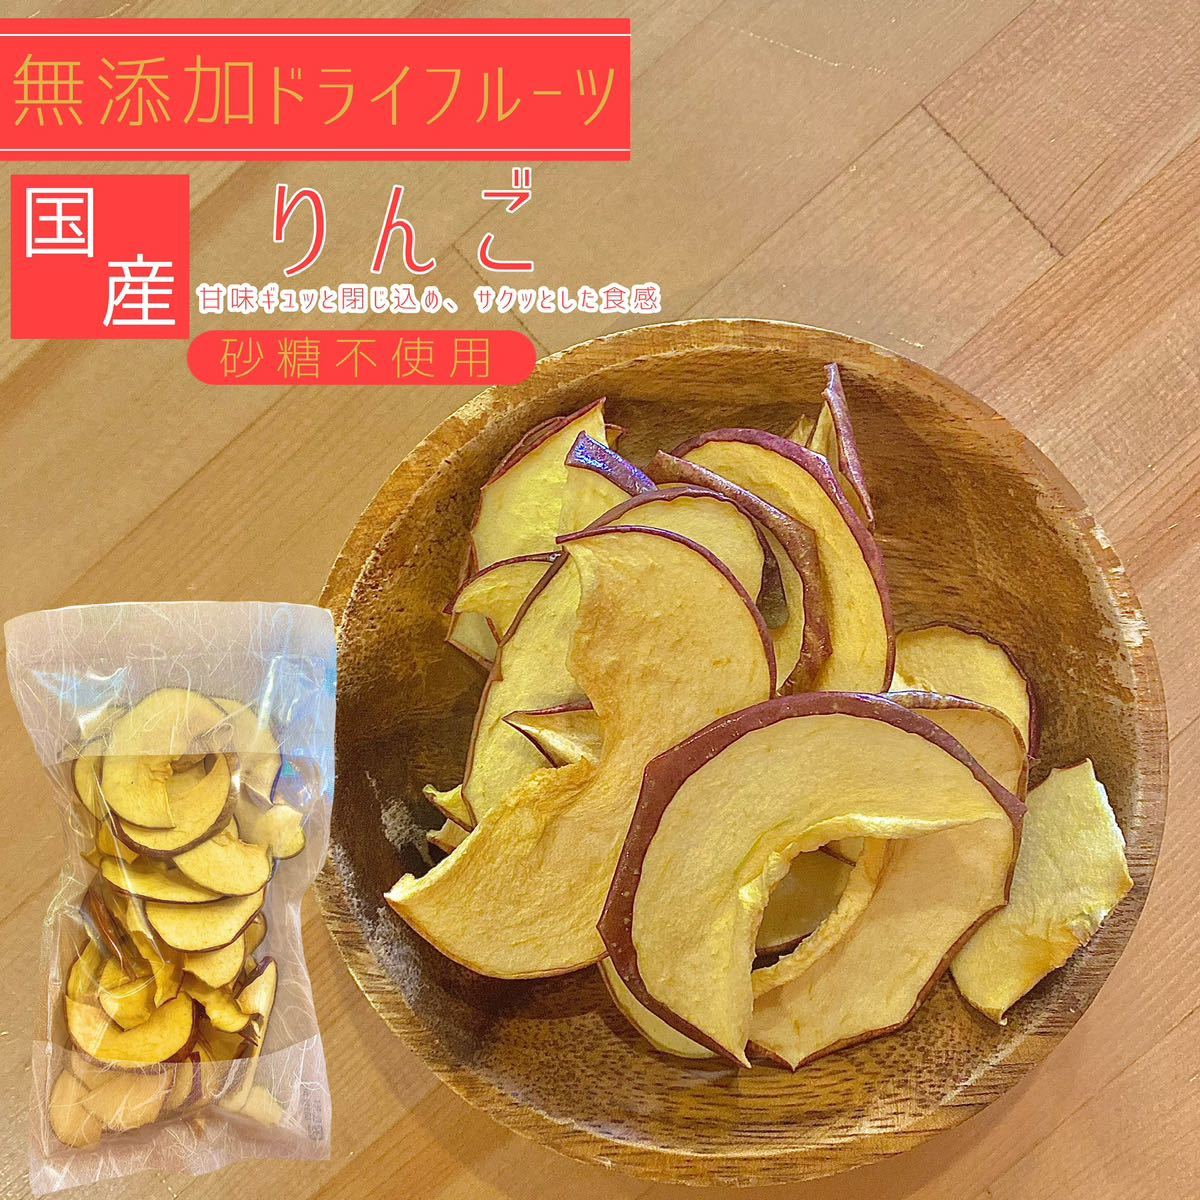 [3 пакет ] Aomori префектура производство яблоко chip s солнечный ..120g без добавок сухофрукт 